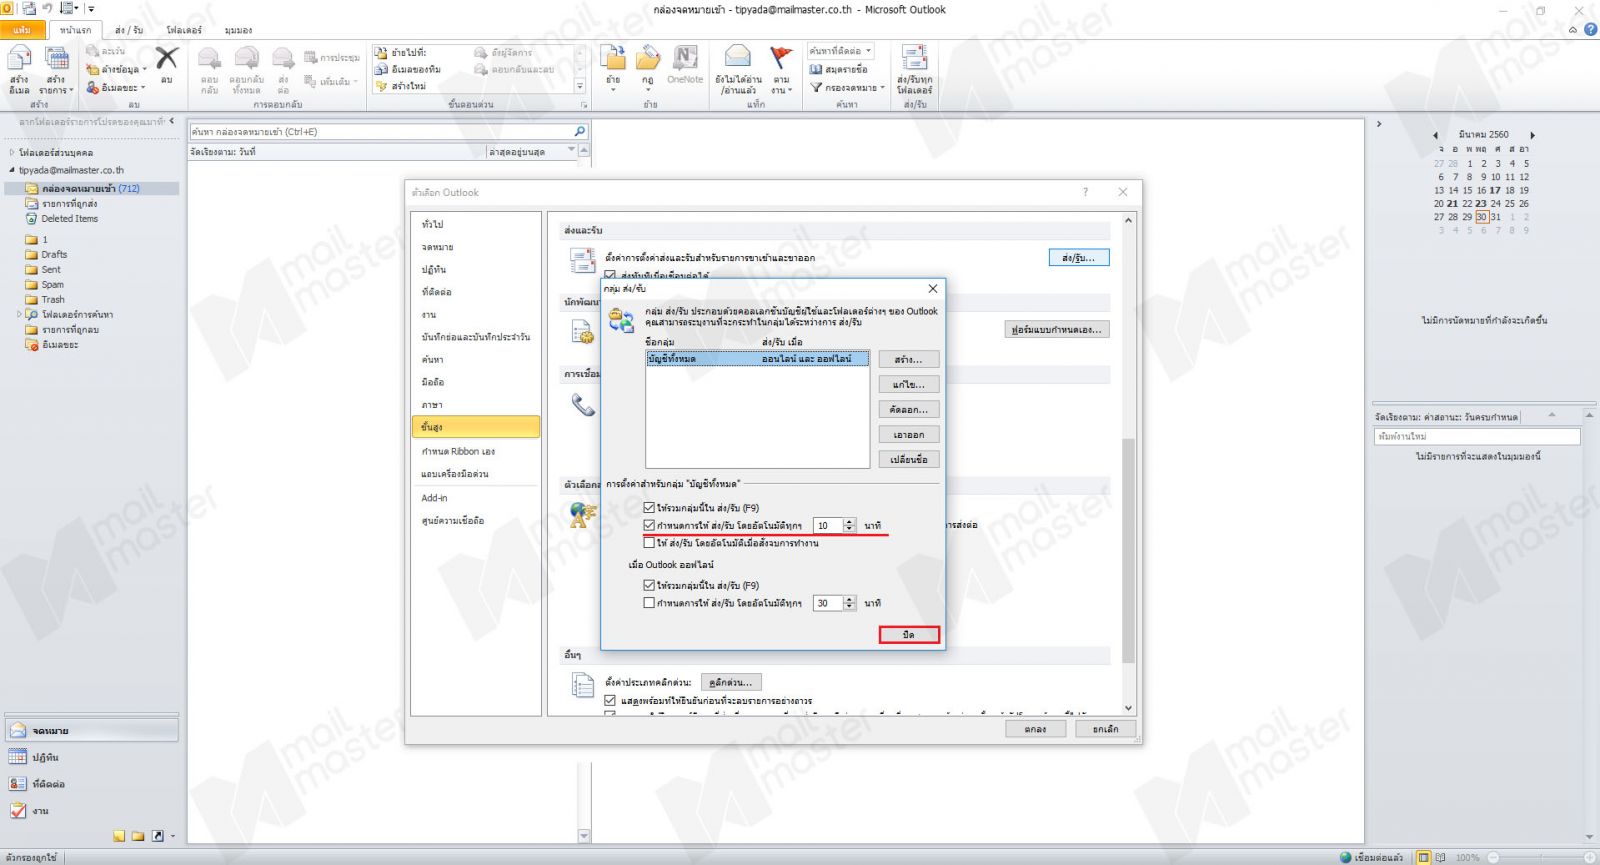 การ Sync ข้อมูล Send & Receive ของ Outlook กับ server